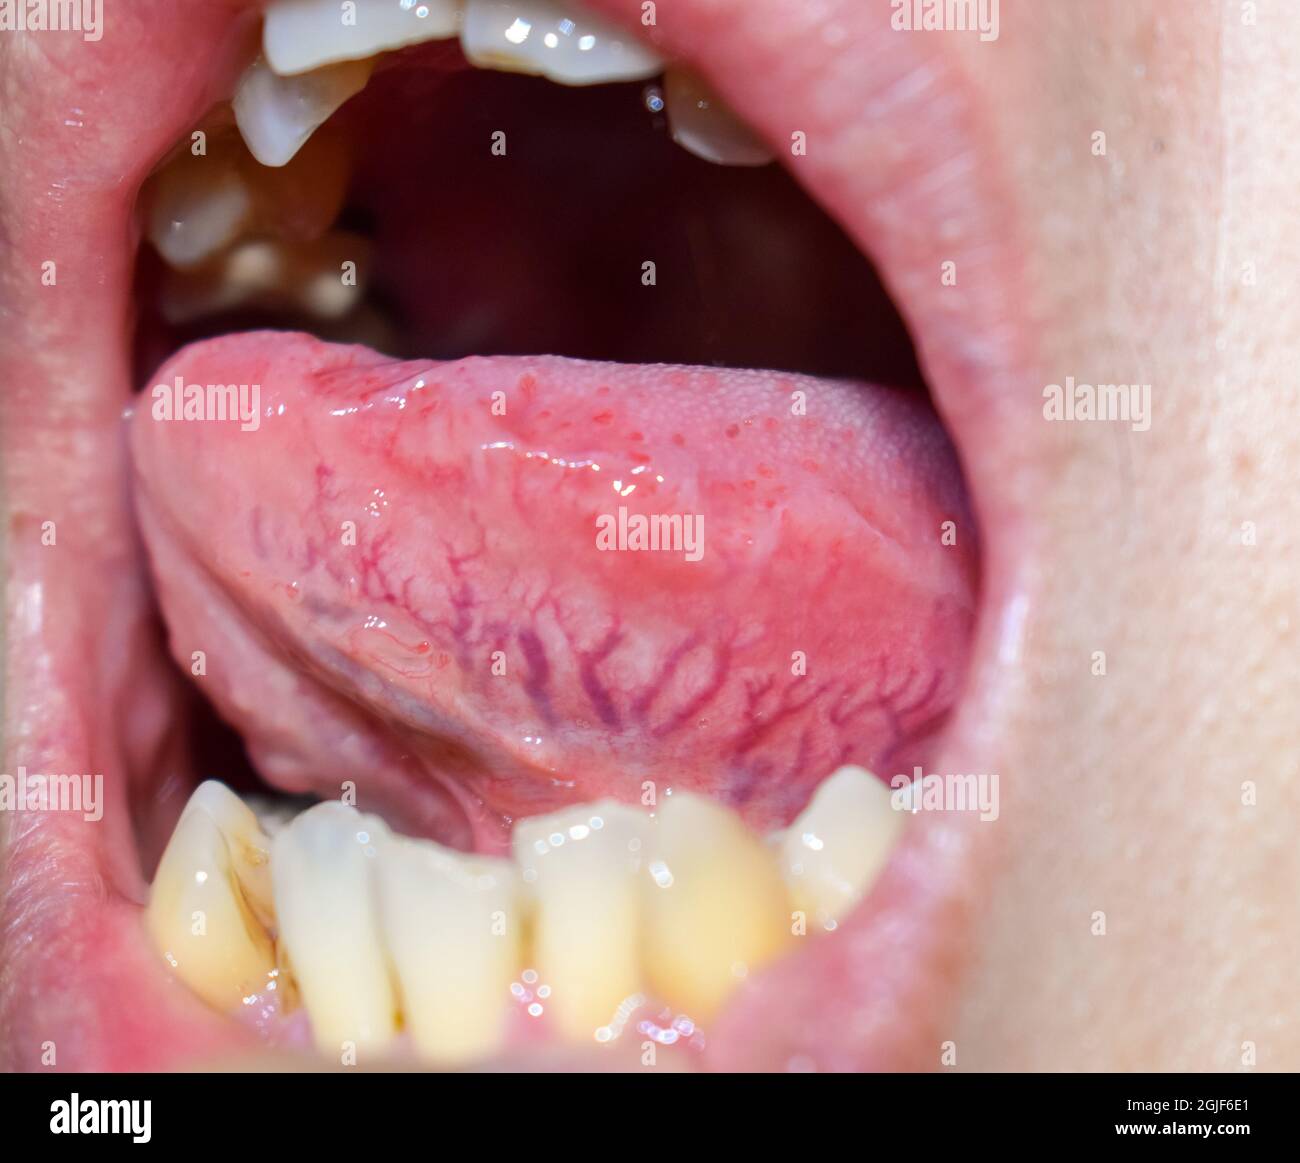 Vene prominenti, dilatate e tortuose chiamate varici sul lato laterale della lingua. Primo piano. Foto Stock